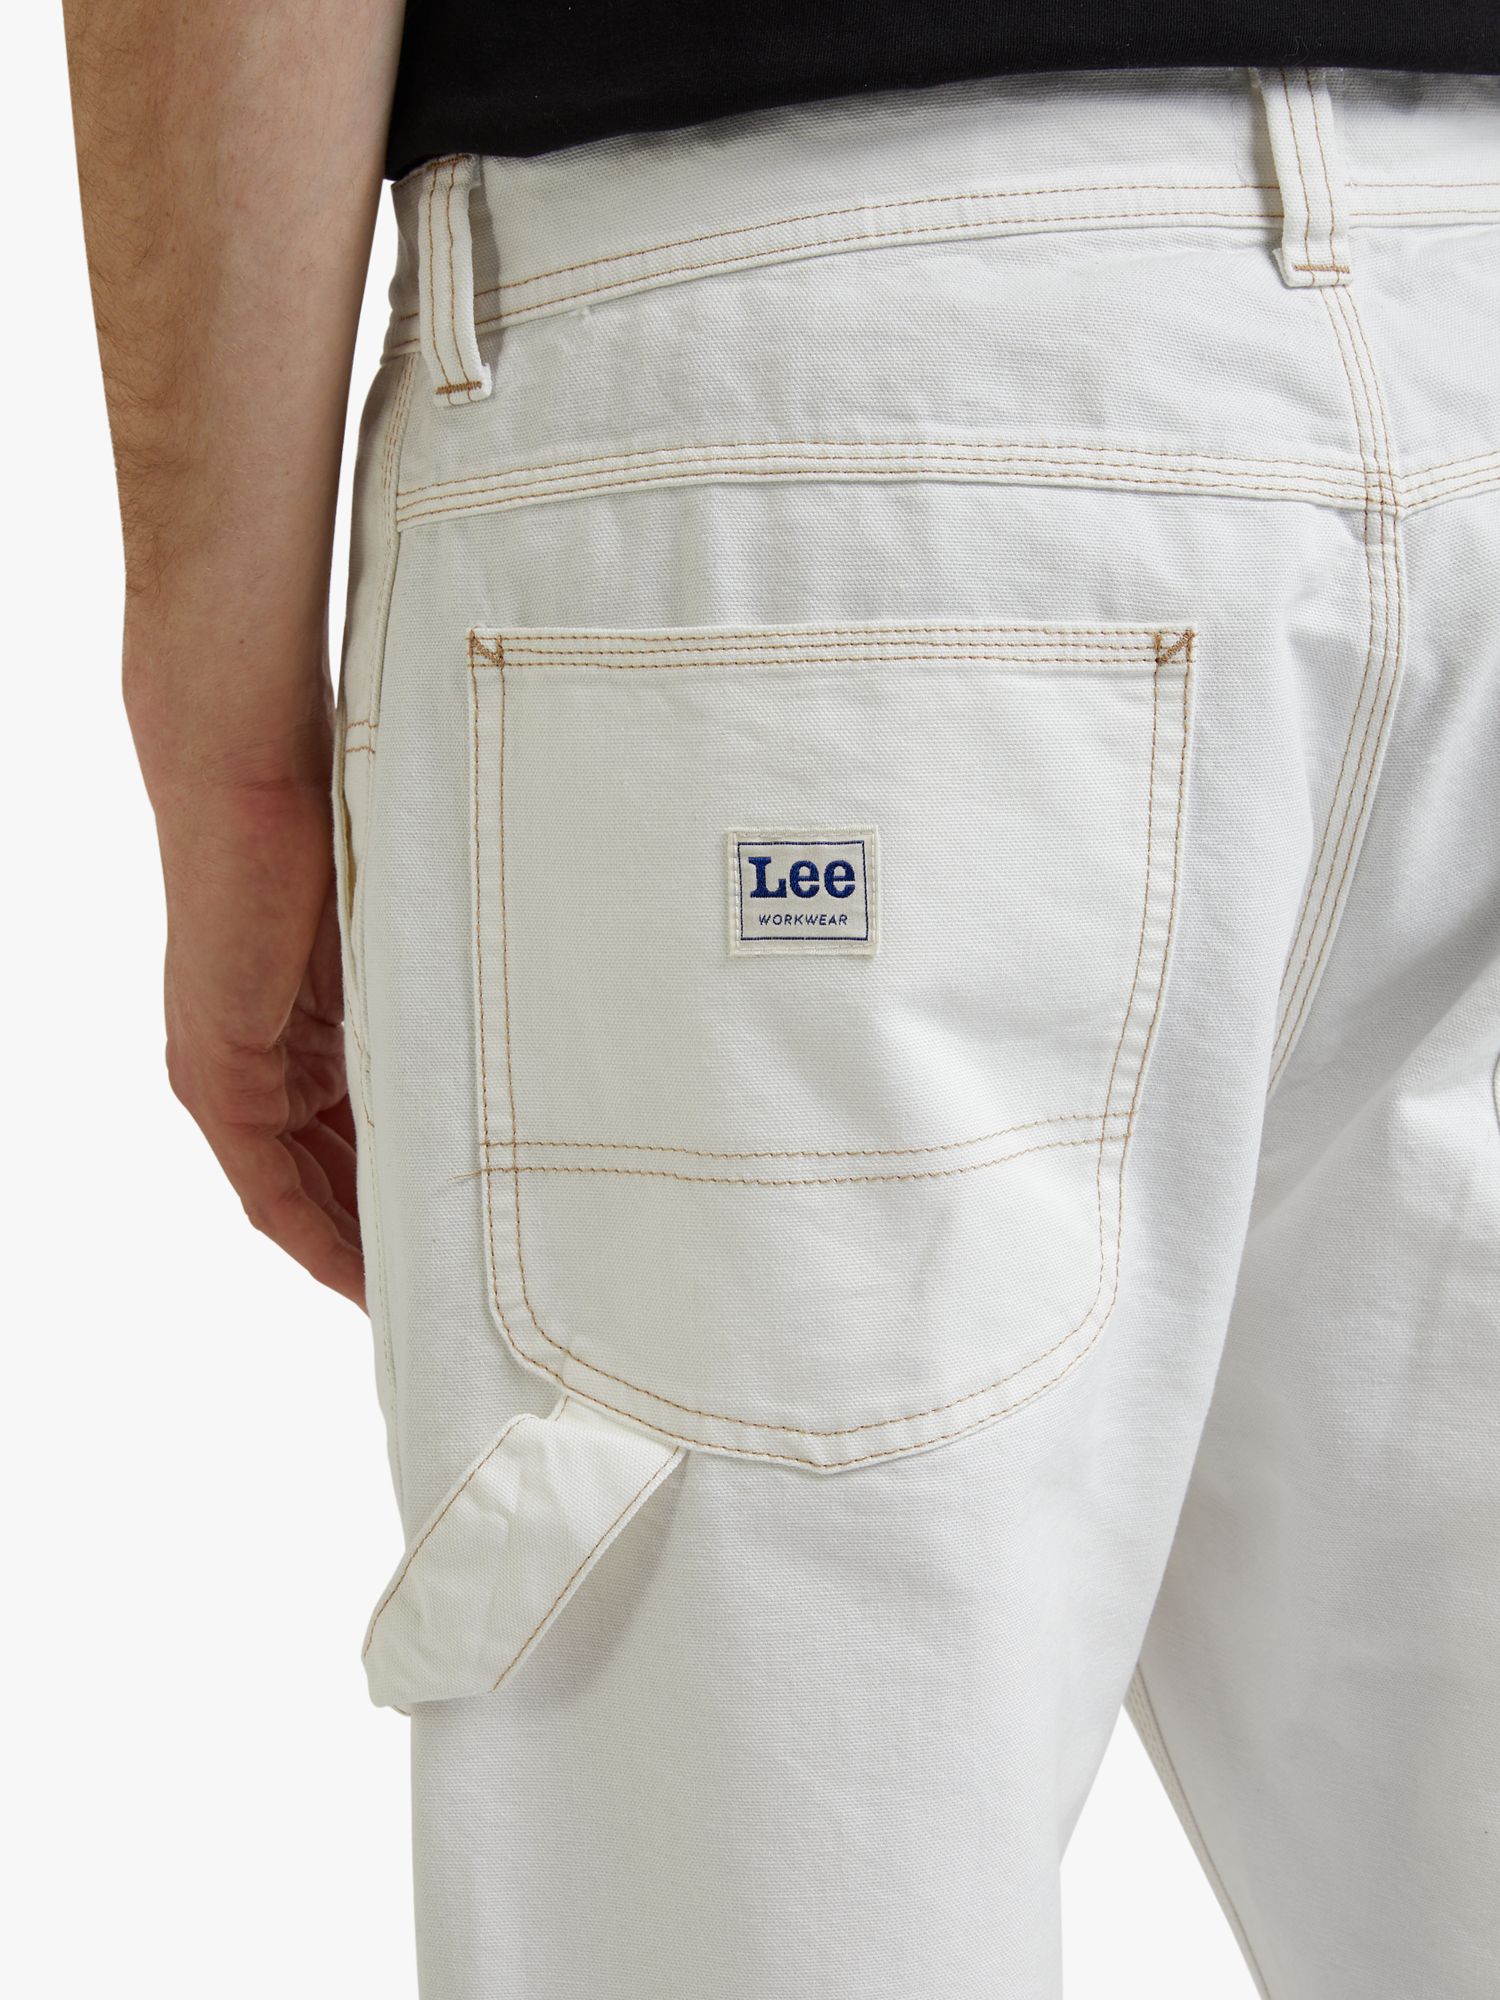 John Lewis ANYDAY Carpenter Denim Jeans, Ecru at John Lewis & Partners